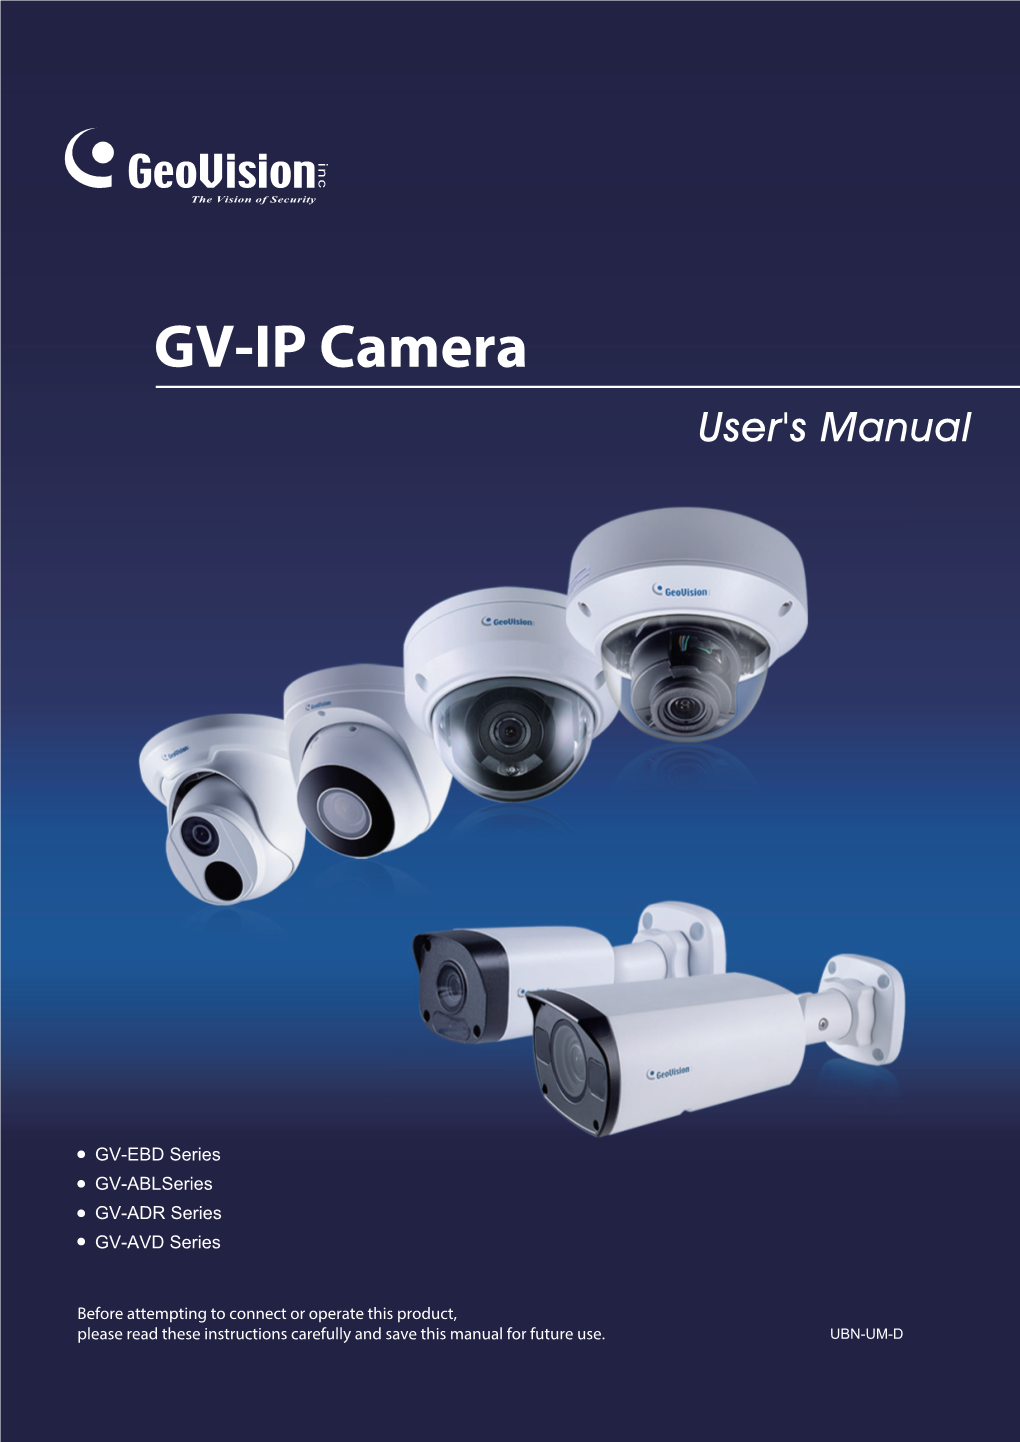 GV-IP Camera User's Manual(UBN-UM-D)